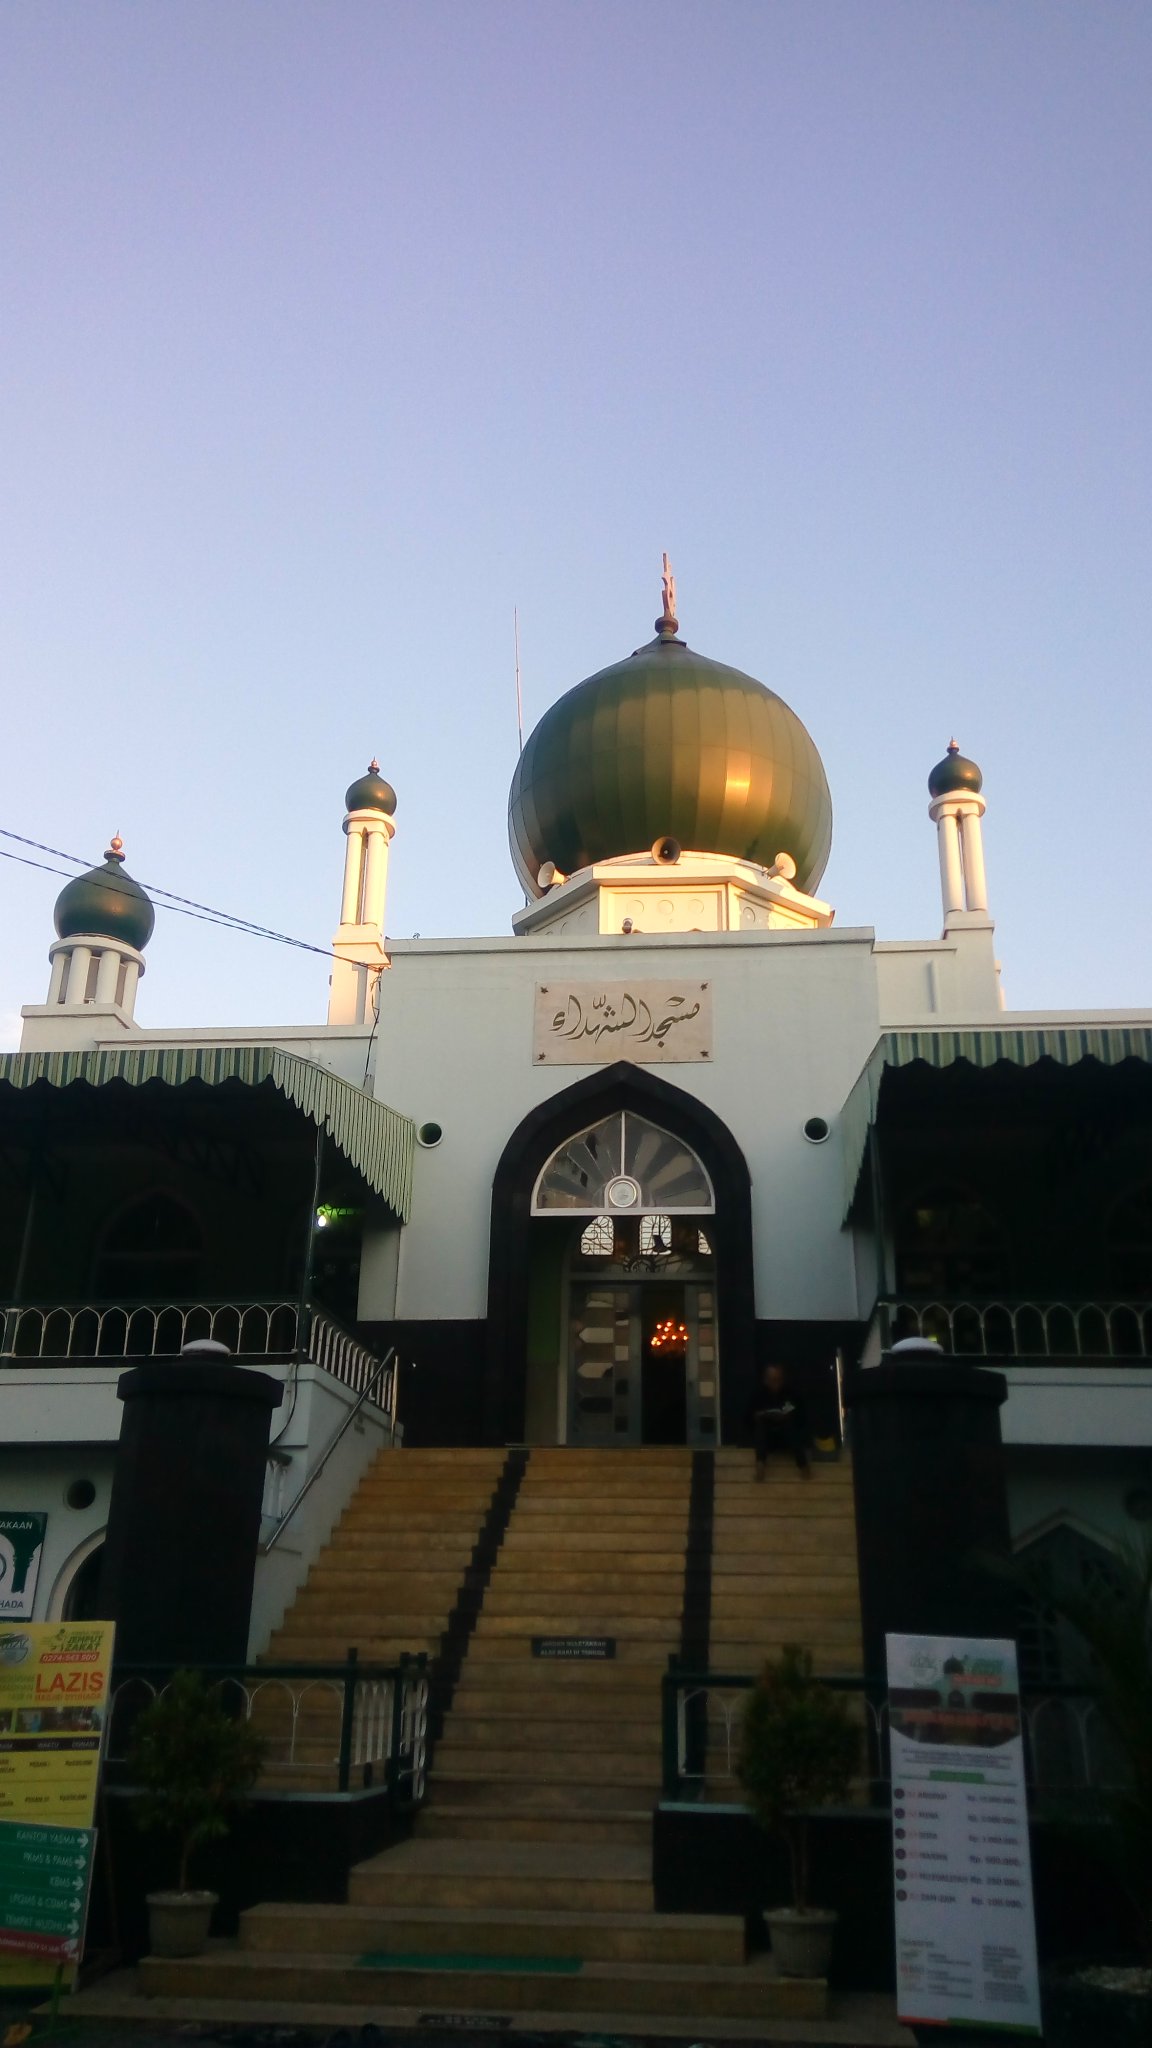 Masjid Syuhada Jogja menyediakan menu buka puasa dari berbagai daerah. Dari akun Twitter @kupinang